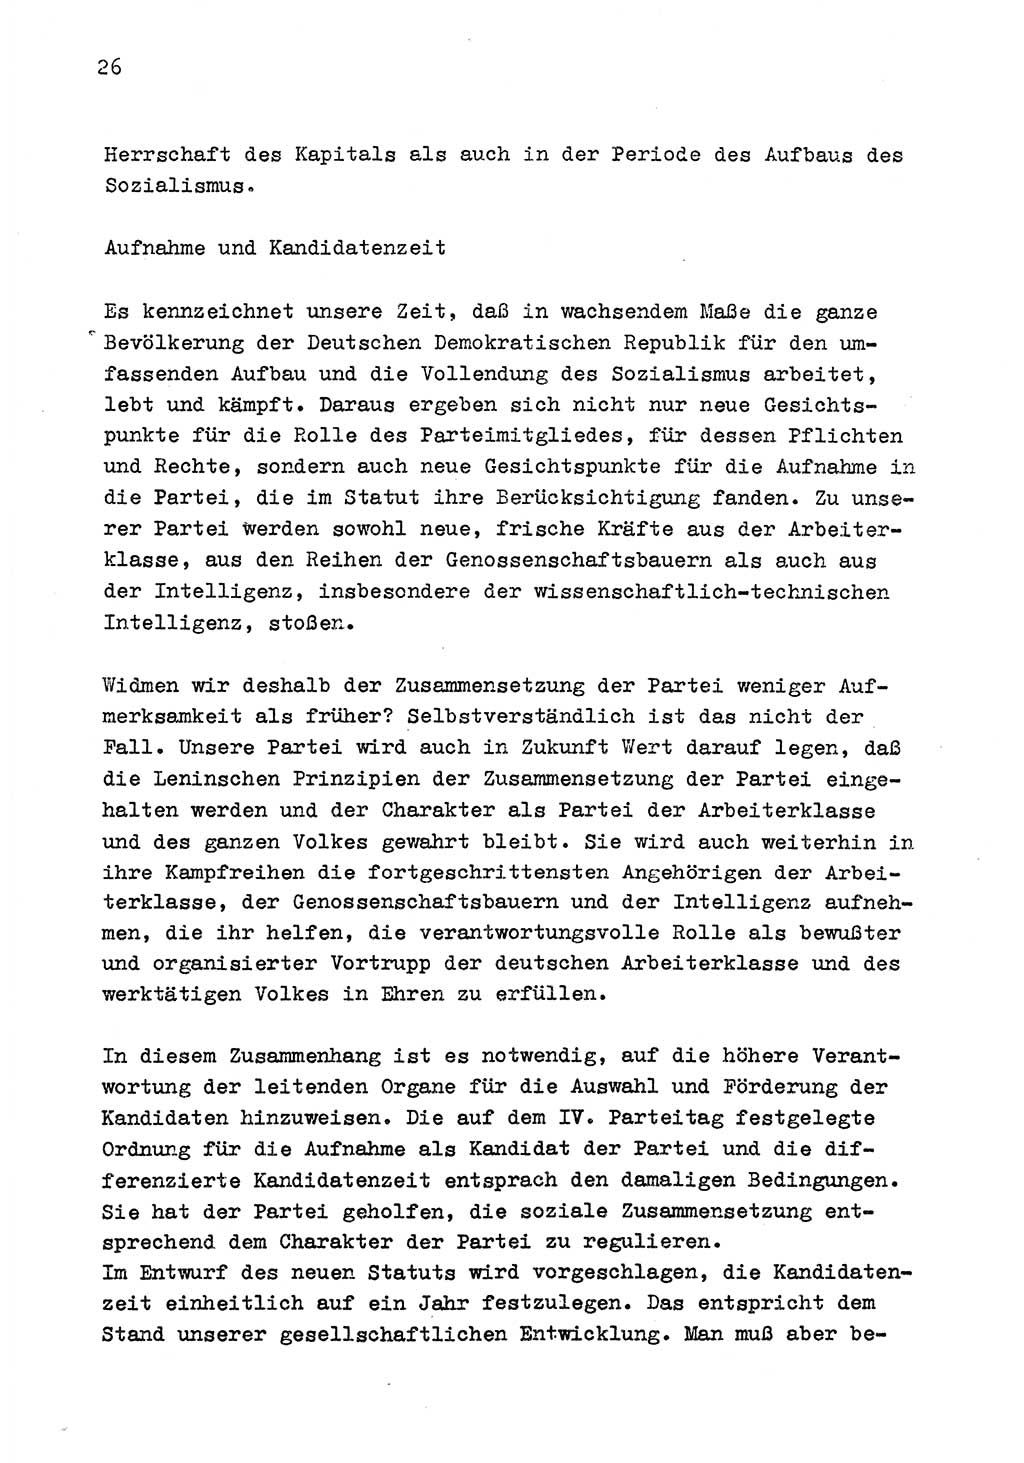 Zu Fragen der Parteiarbeit [Sozialistische Einheitspartei Deutschlands (SED) Deutsche Demokratische Republik (DDR)] 1979, Seite 26 (Fr. PA SED DDR 1979, S. 26)